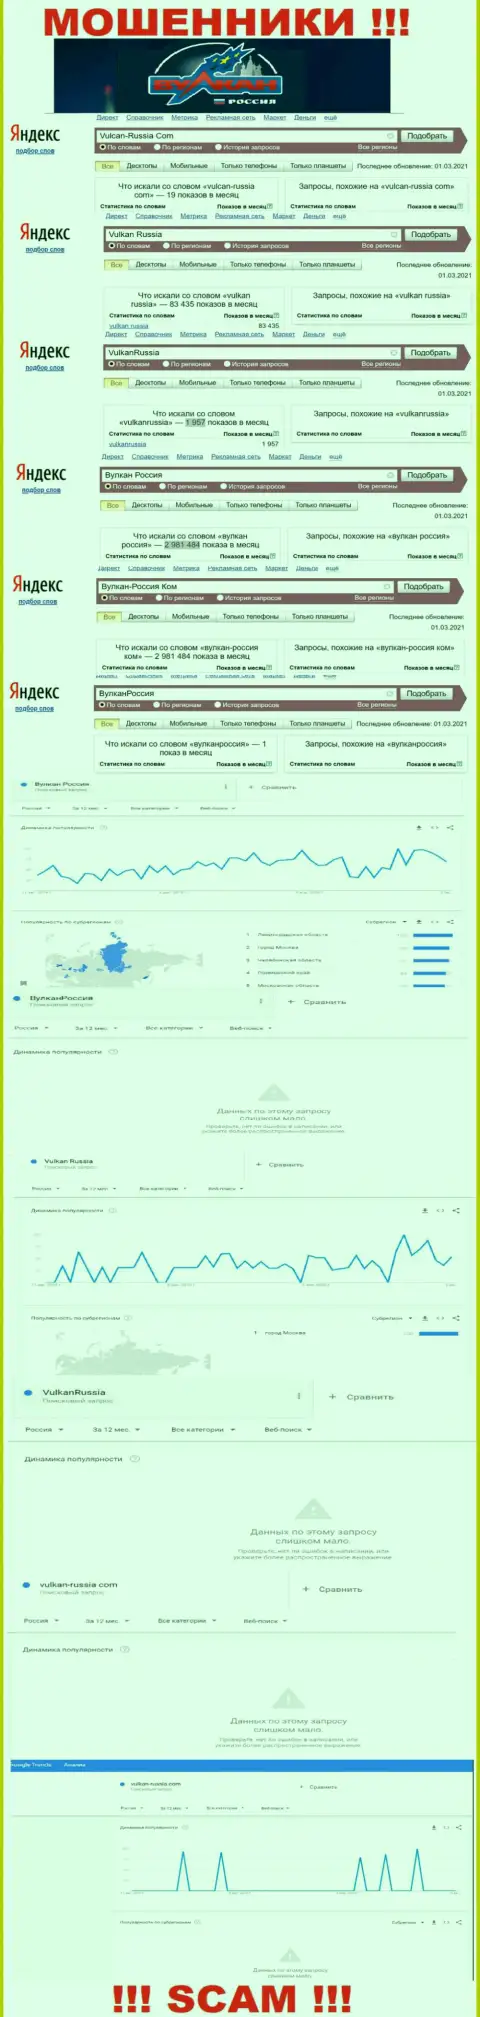 Статистические показатели количества просмотров сведений о мошенниках Вулкан Россия в глобальной сети